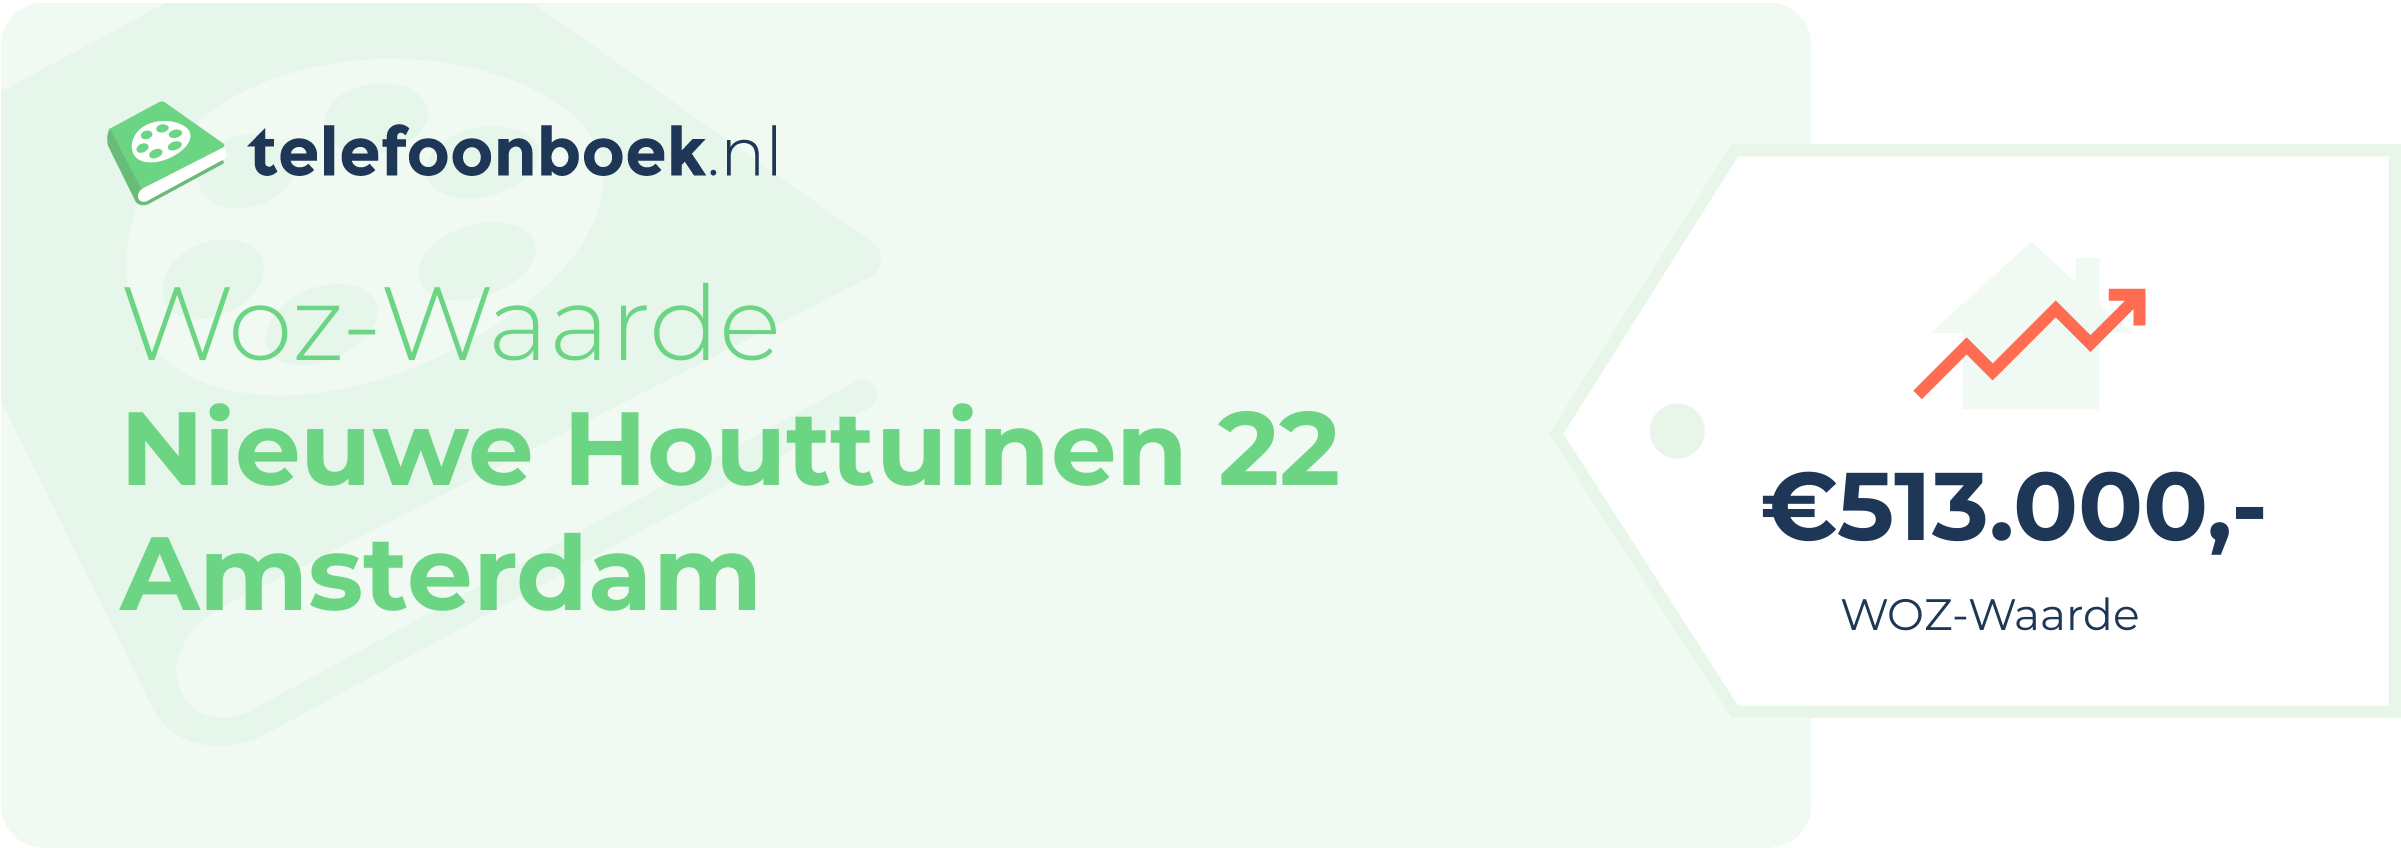 WOZ-waarde Nieuwe Houttuinen 22 Amsterdam